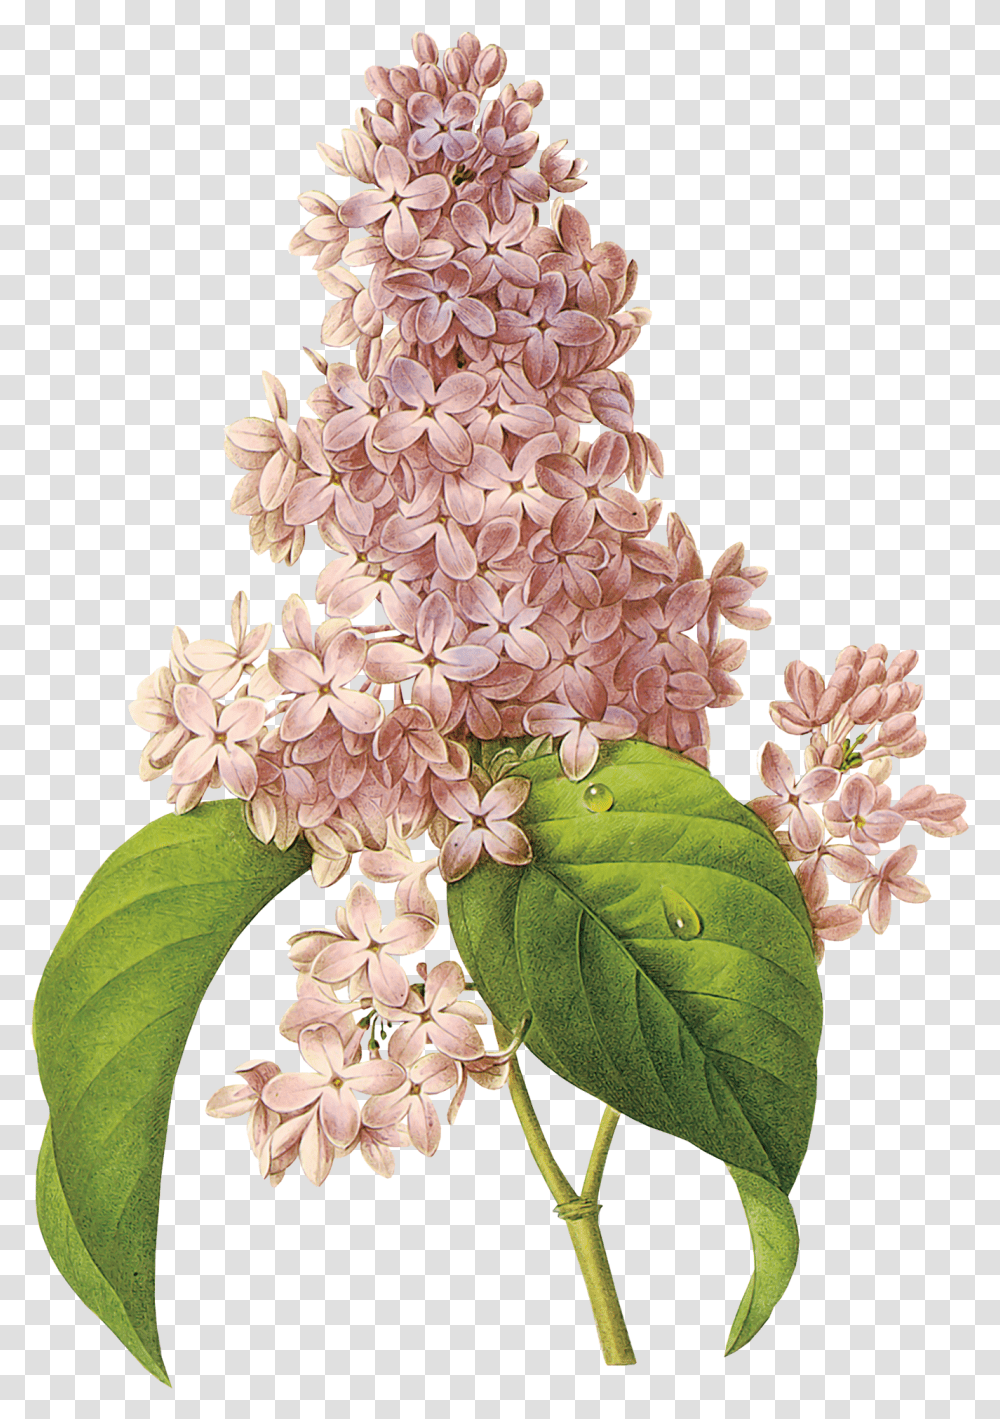 Lilac Flores De Colores Que Parecen De Algodon, Plant, Flower, Blossom, Wedding Cake Transparent Png